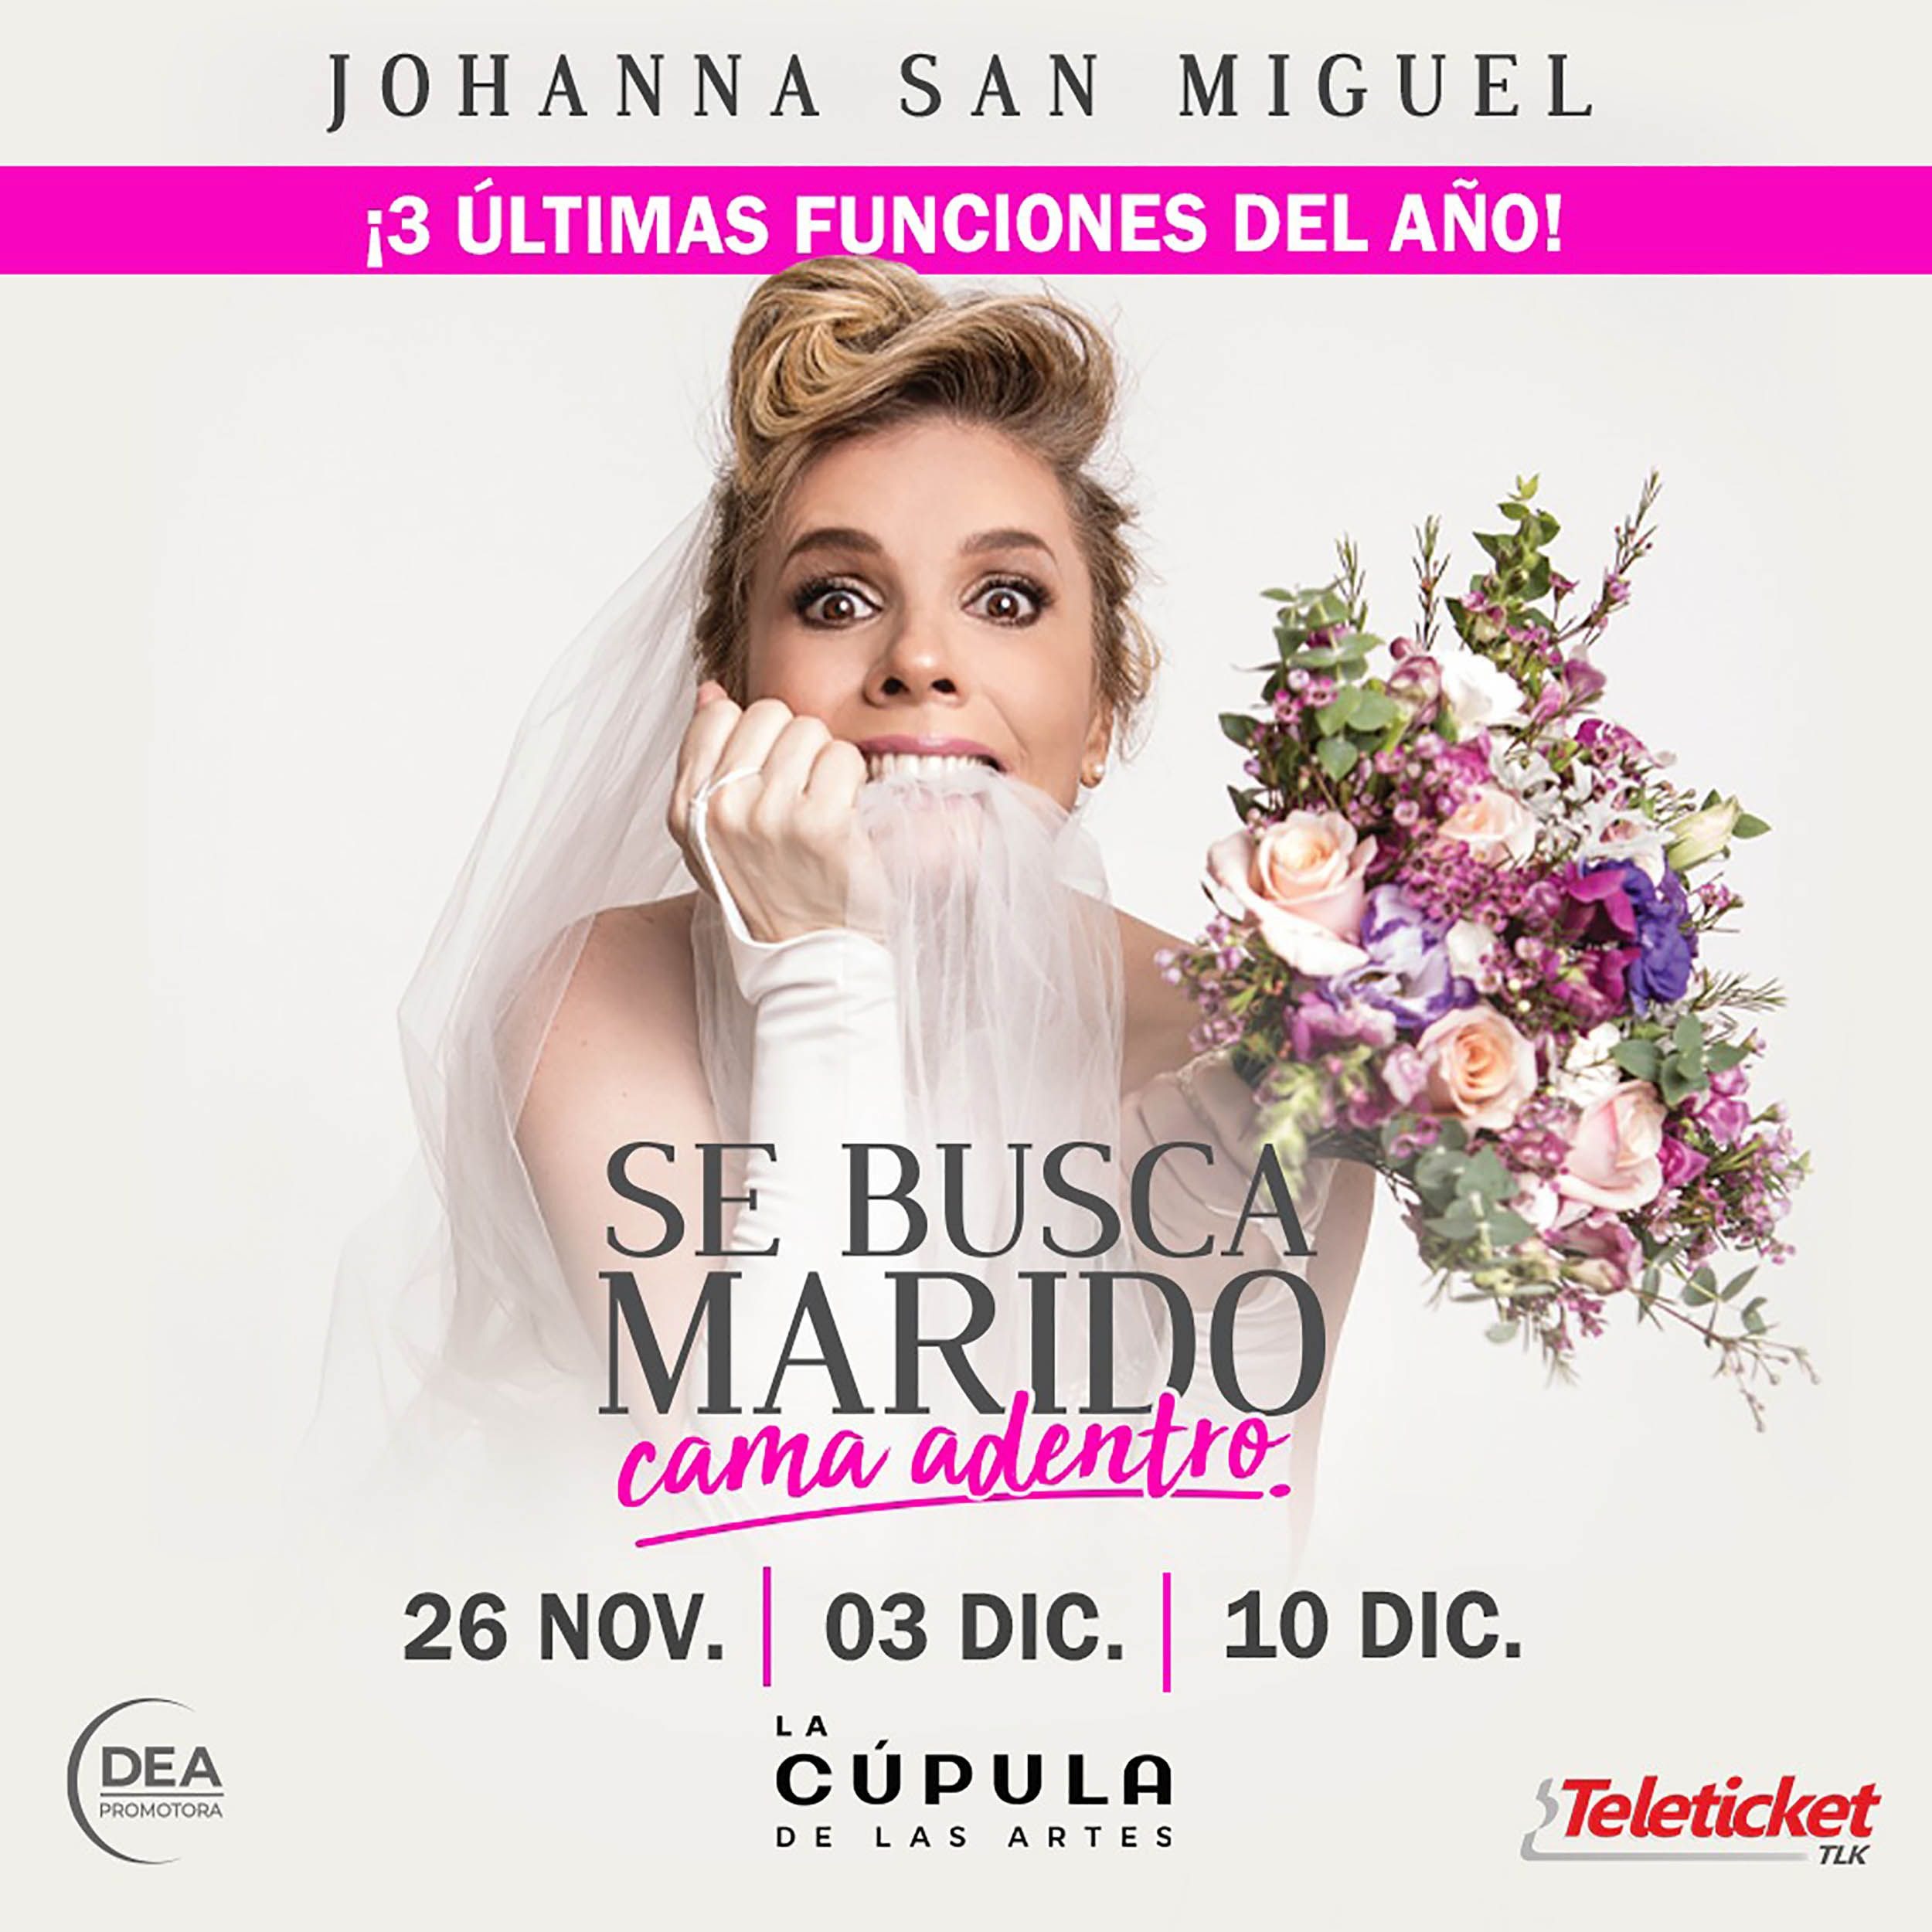 Johanna San Miguel anuncia las tres últimas funciones de “Se busca marido cama adentro”